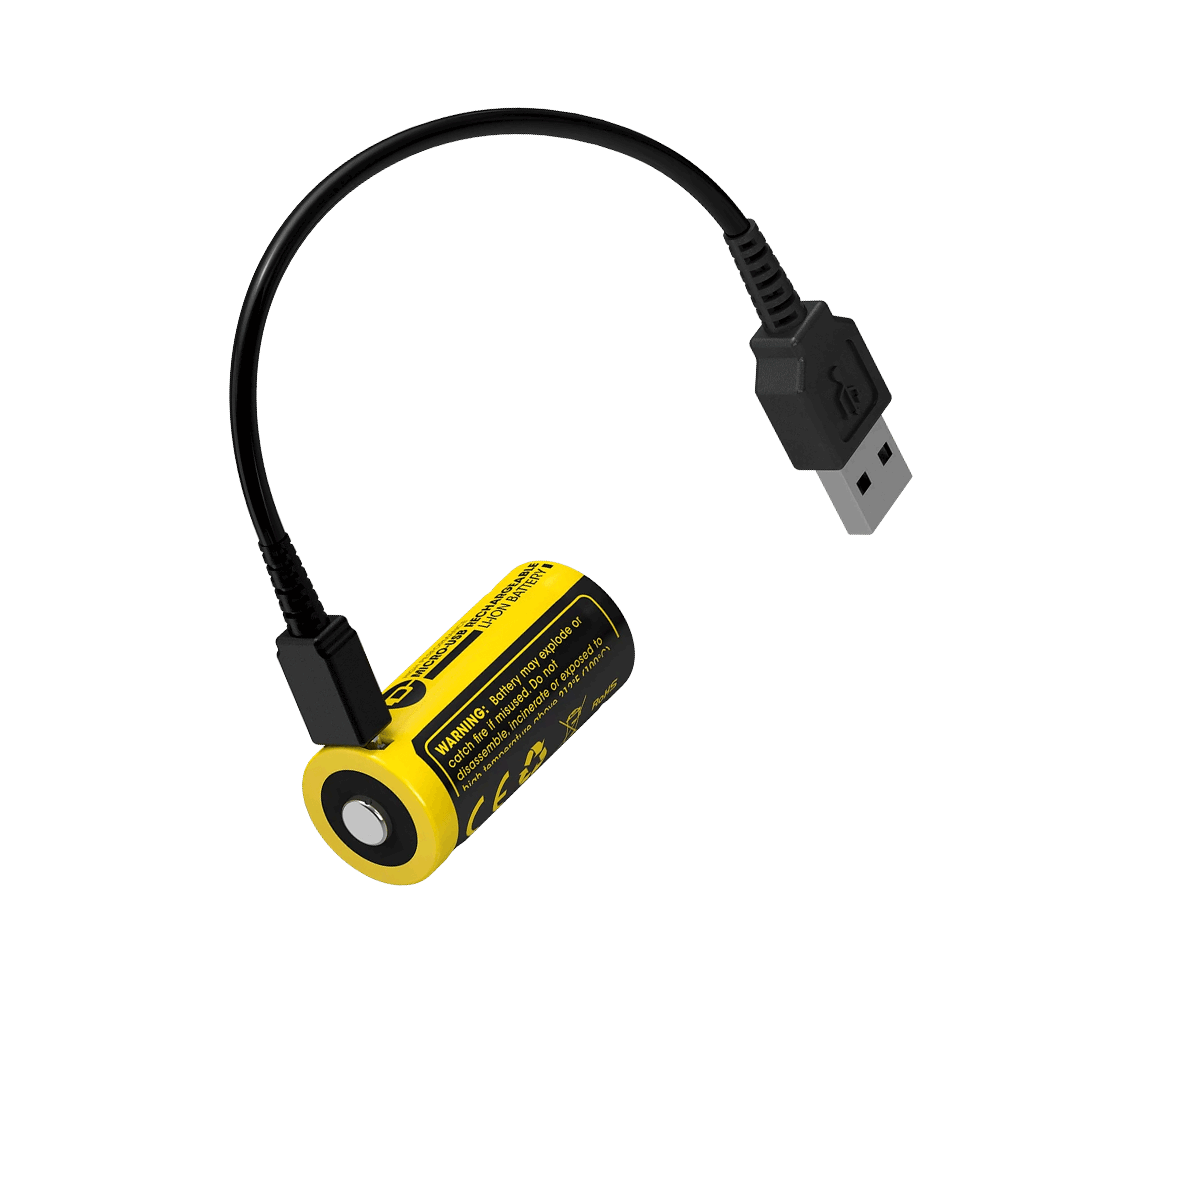 NL1665R (RCR123A - 650mAh - USB)